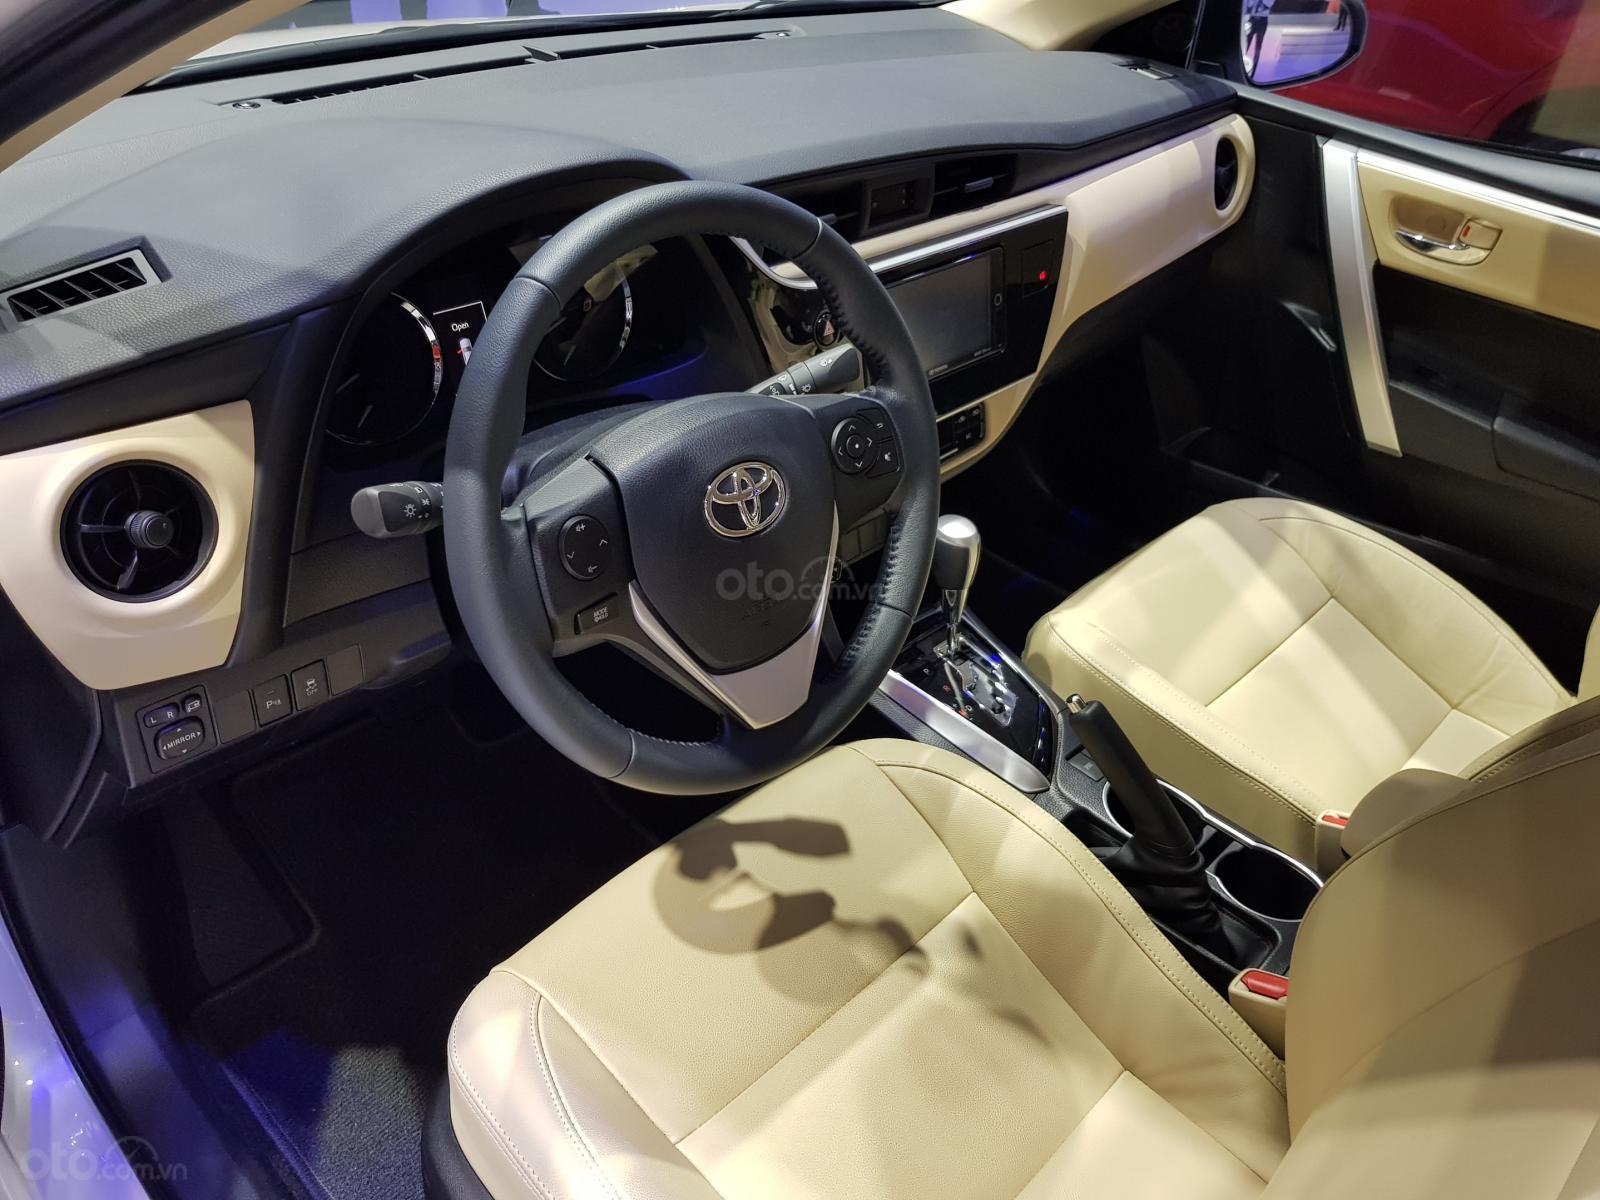 Toyota Corolla Altis nhận ưu đãi chính hãng đến 40 triệu đồng tại Việt Nam a3